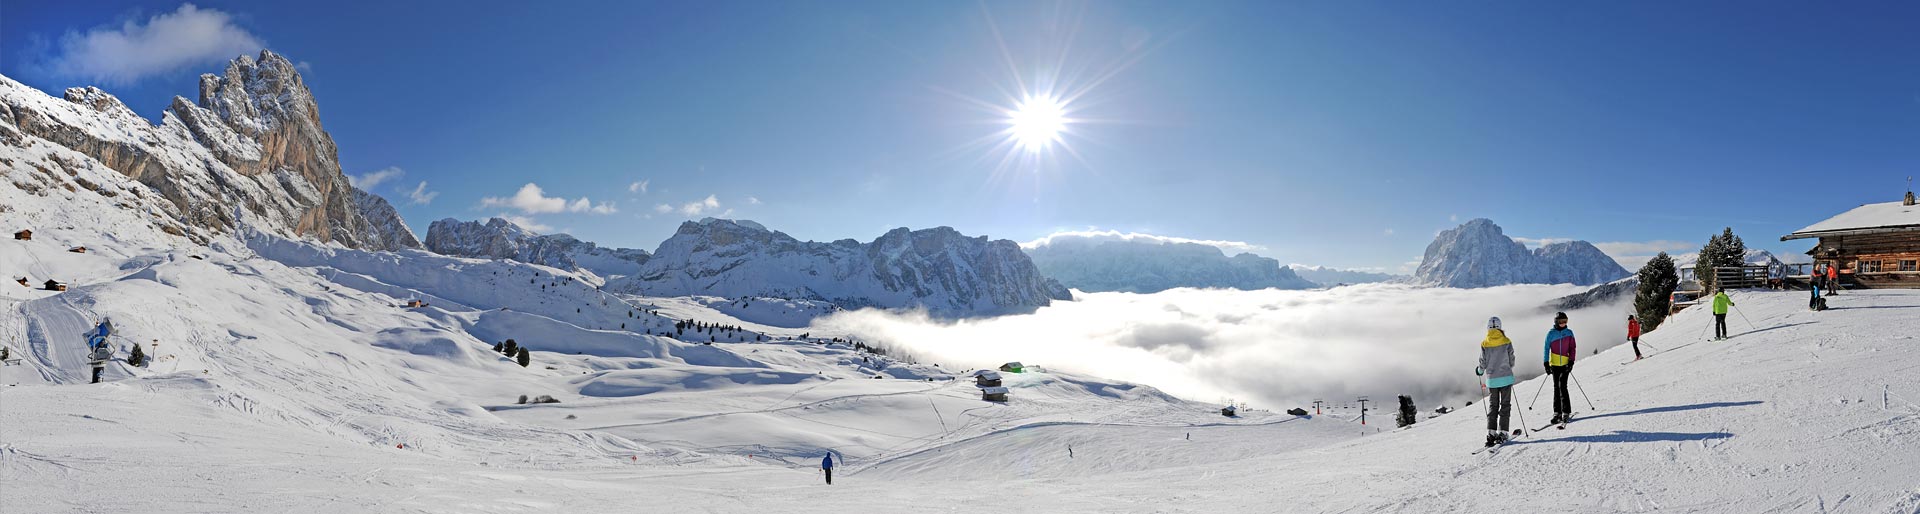 Val Gardena - Skiing